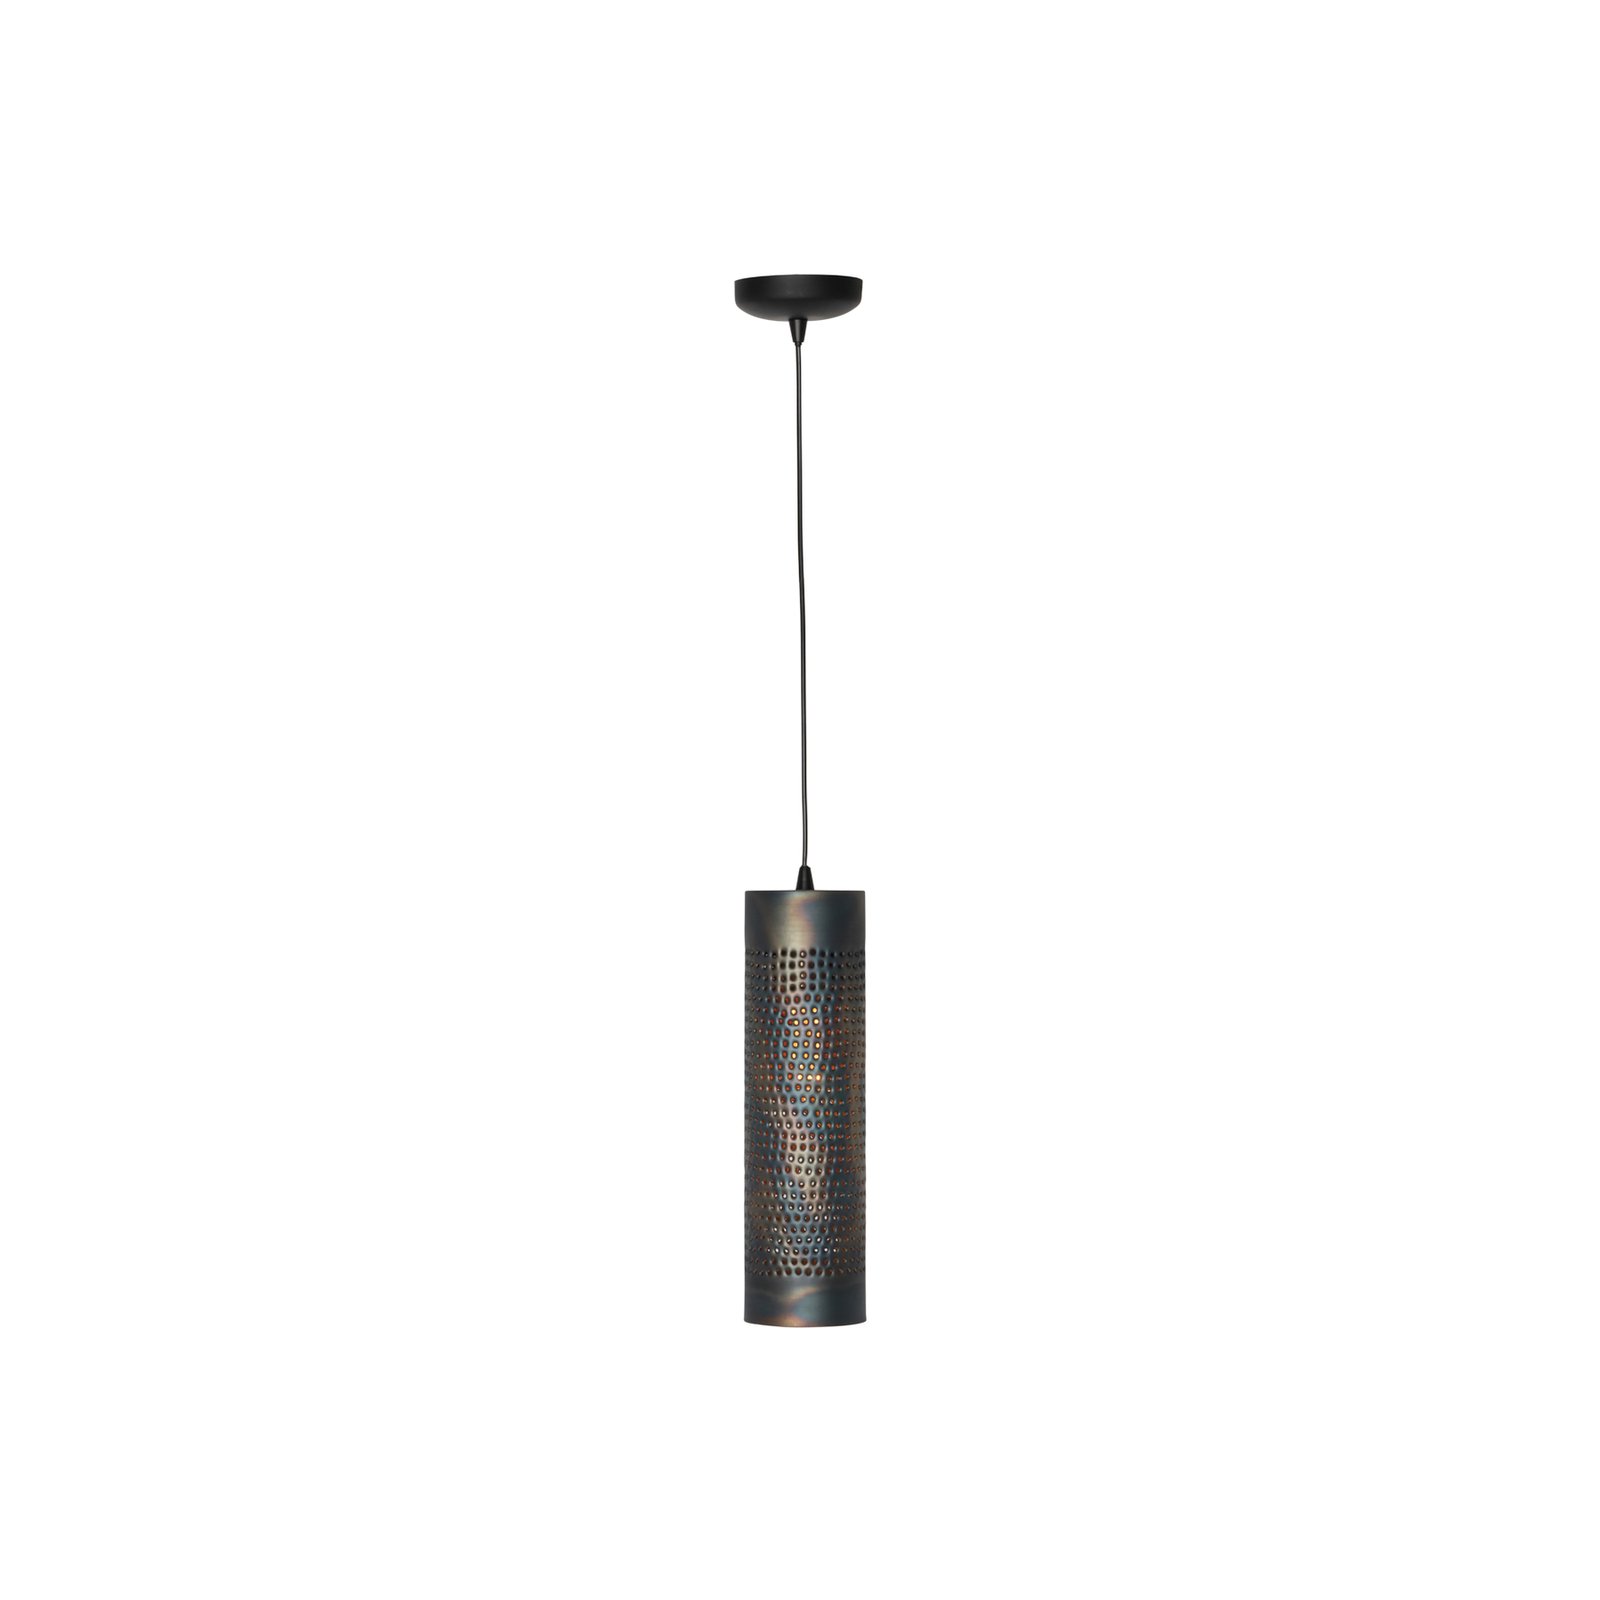 Lampă suspendată Forato, Ø 12 cm, maro, metal